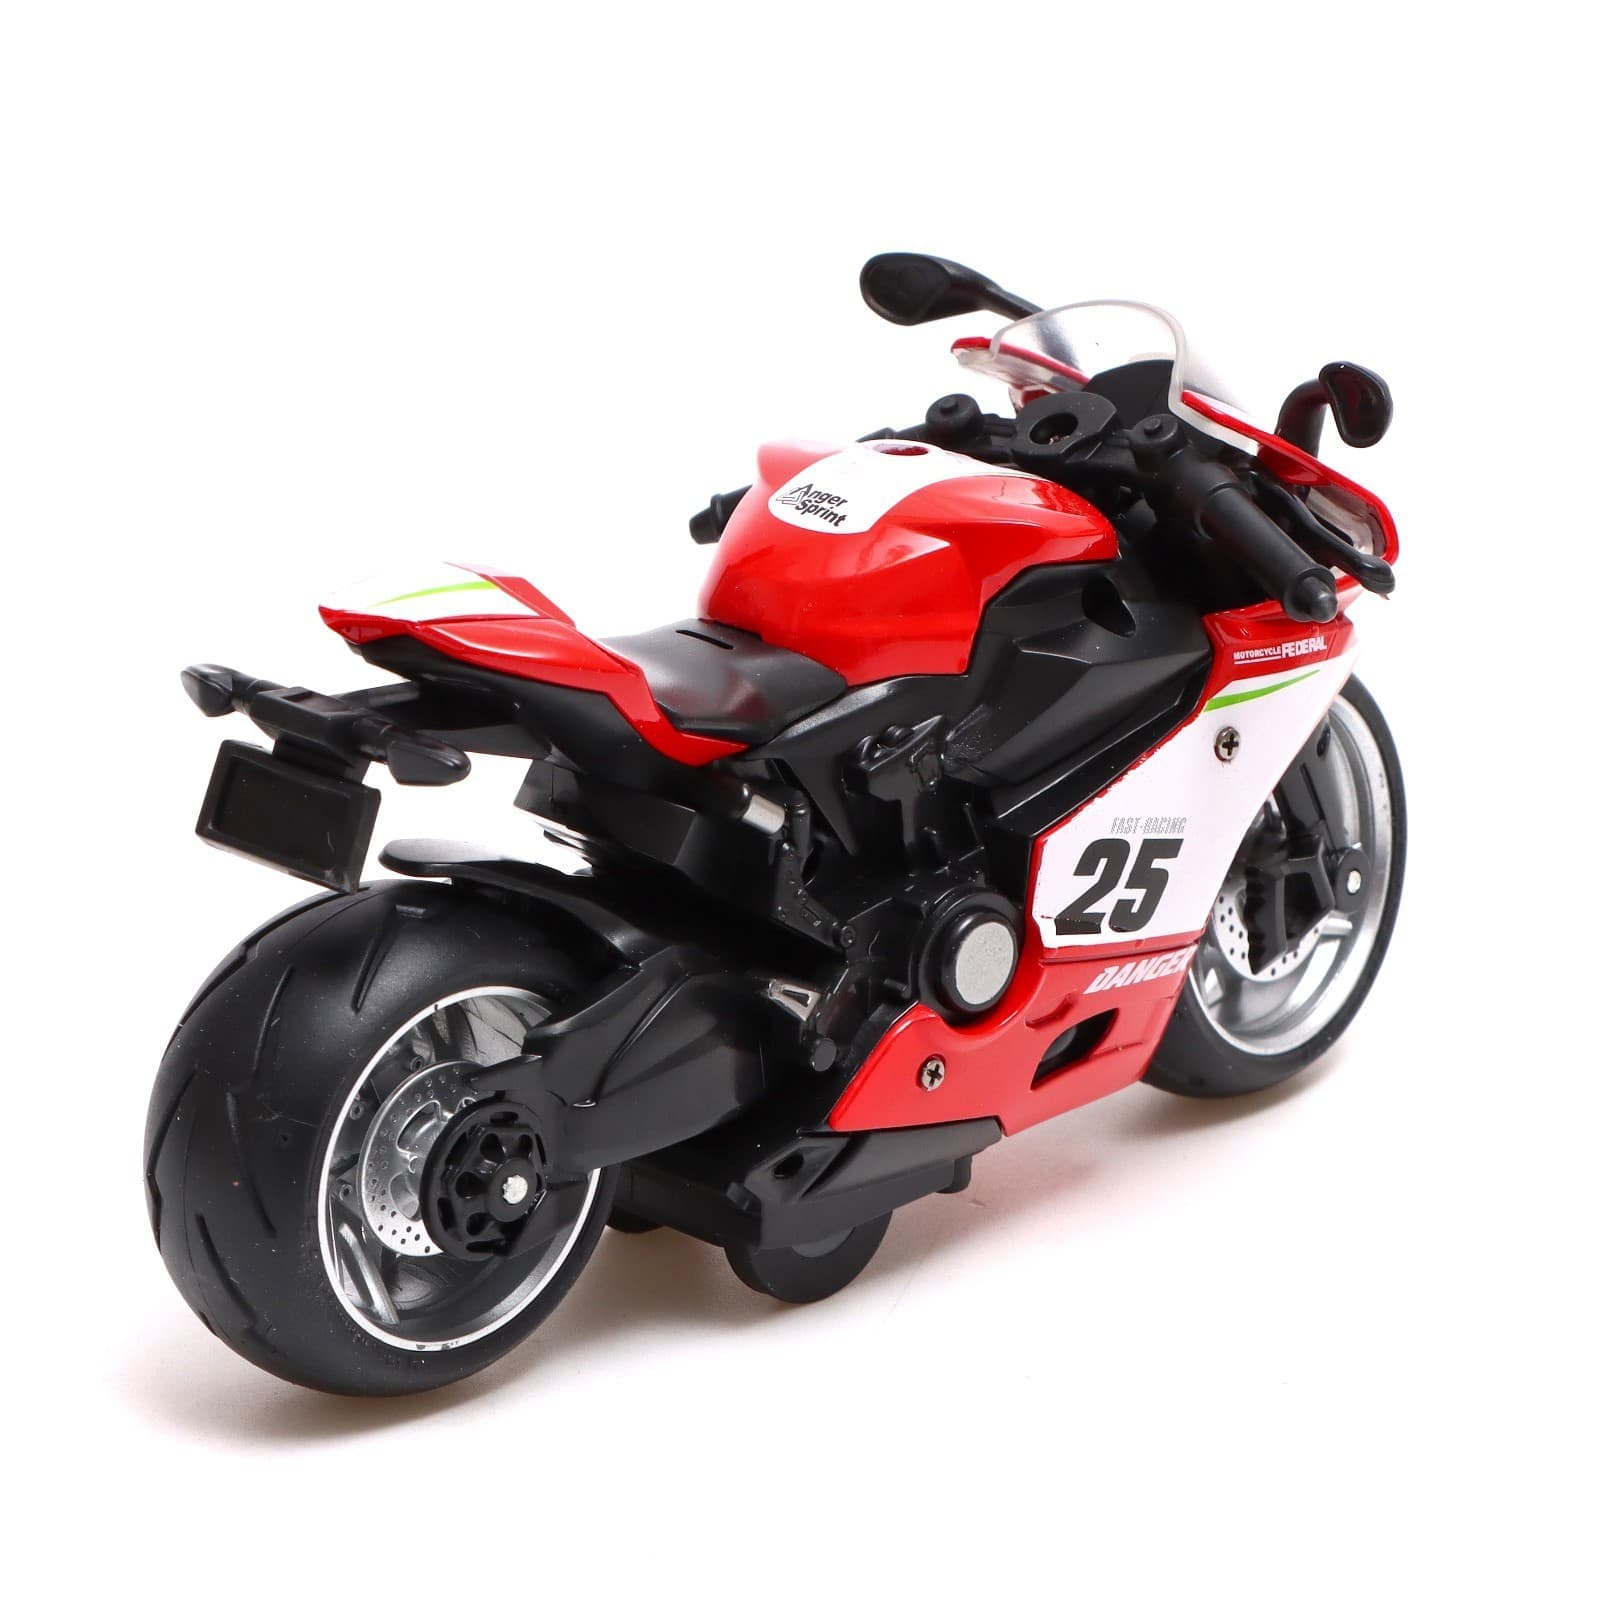 Металлический мотоцикл  Ming Ying 66 1:12 MY66-M2231 15 см. инерционный, свет, звук / Красный